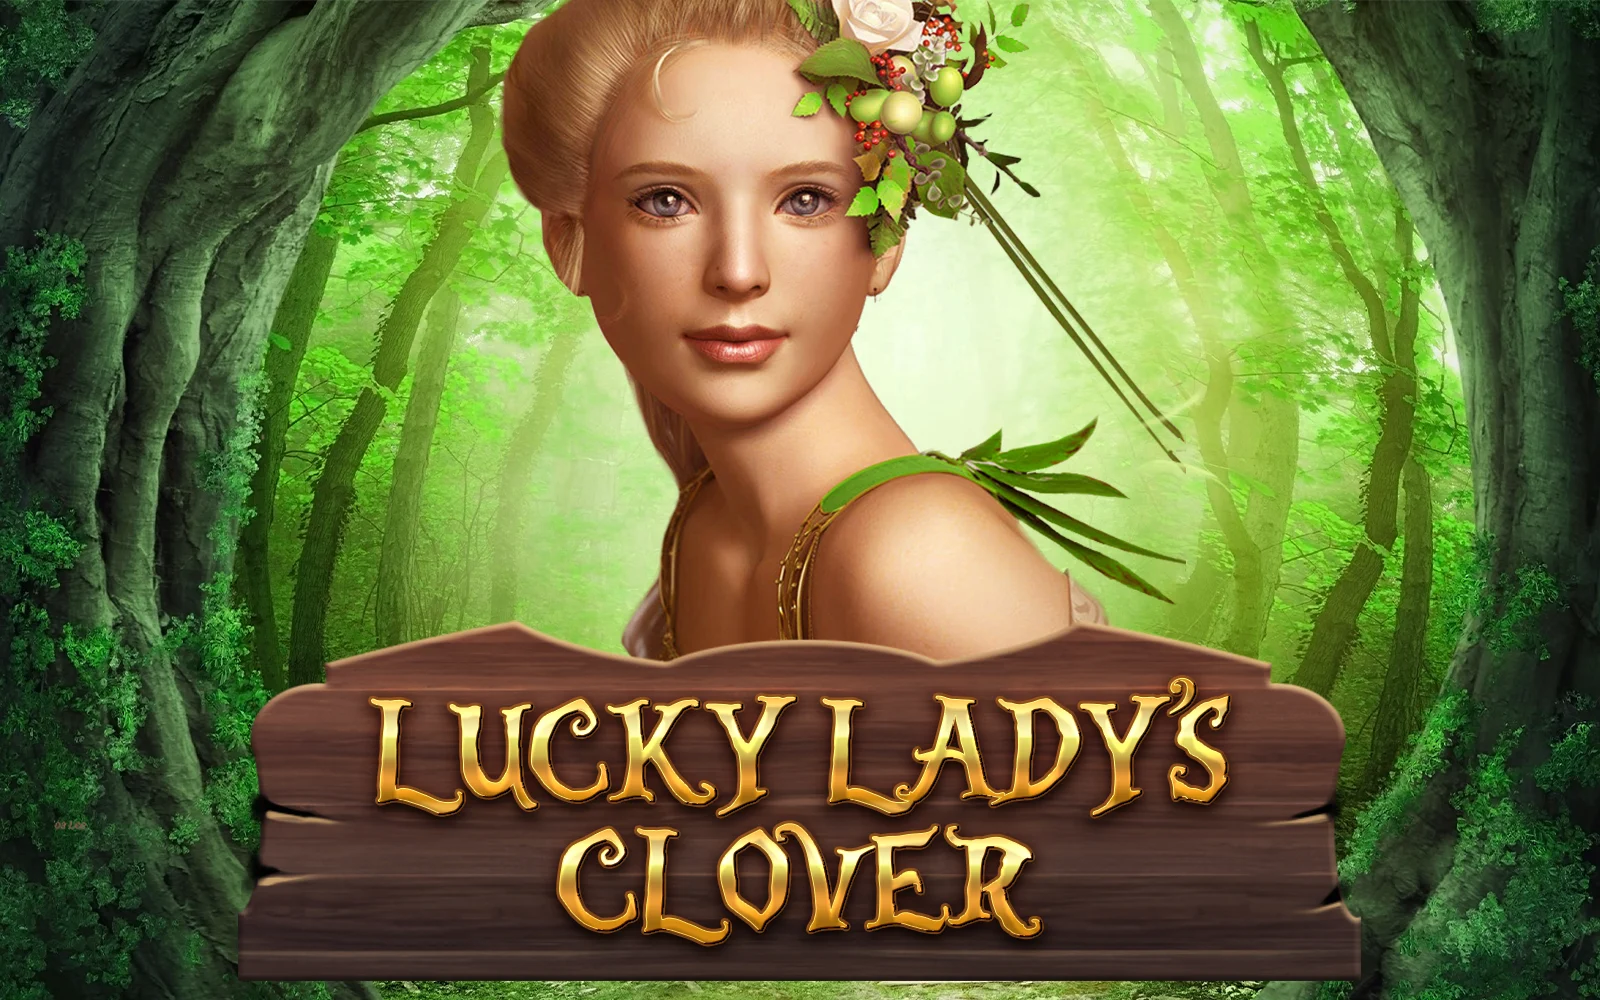 Starcasino.be online casino üzerinden Lucky Lady's Clover oynayın